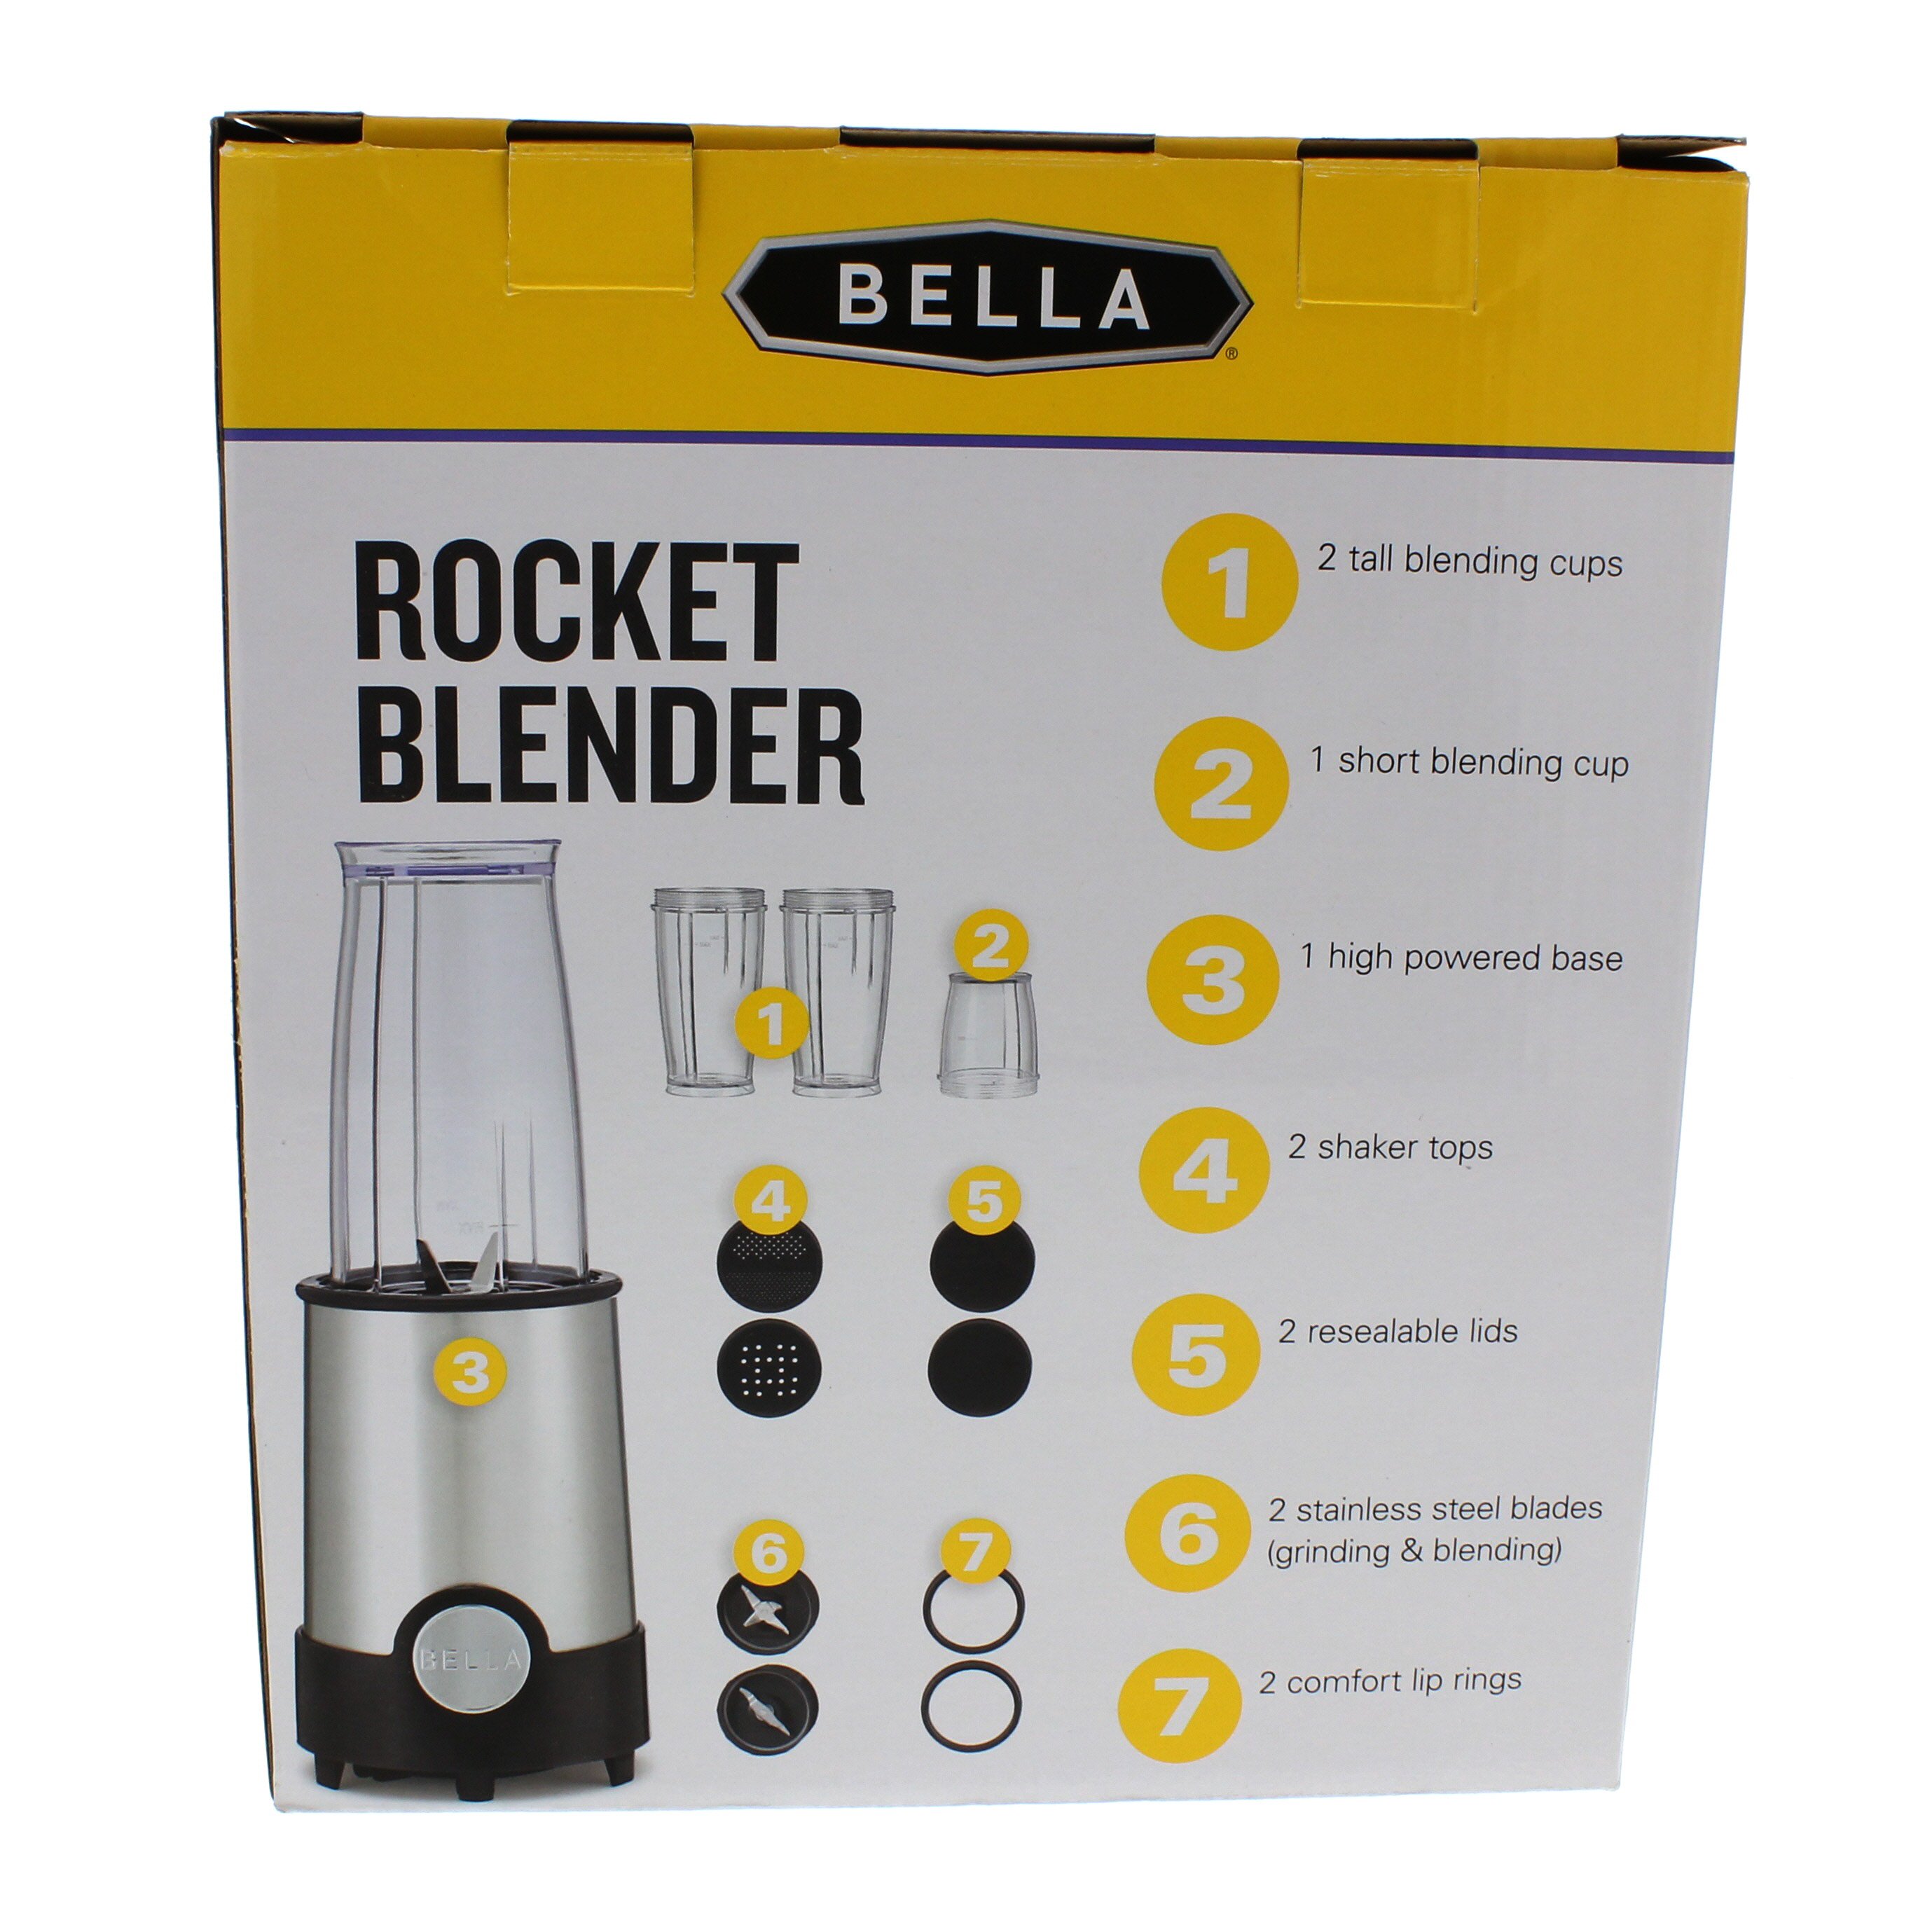 196468-0000057 Bella - 14-Oz. Rocket Blender - Black Stainless steel -  Black Friday